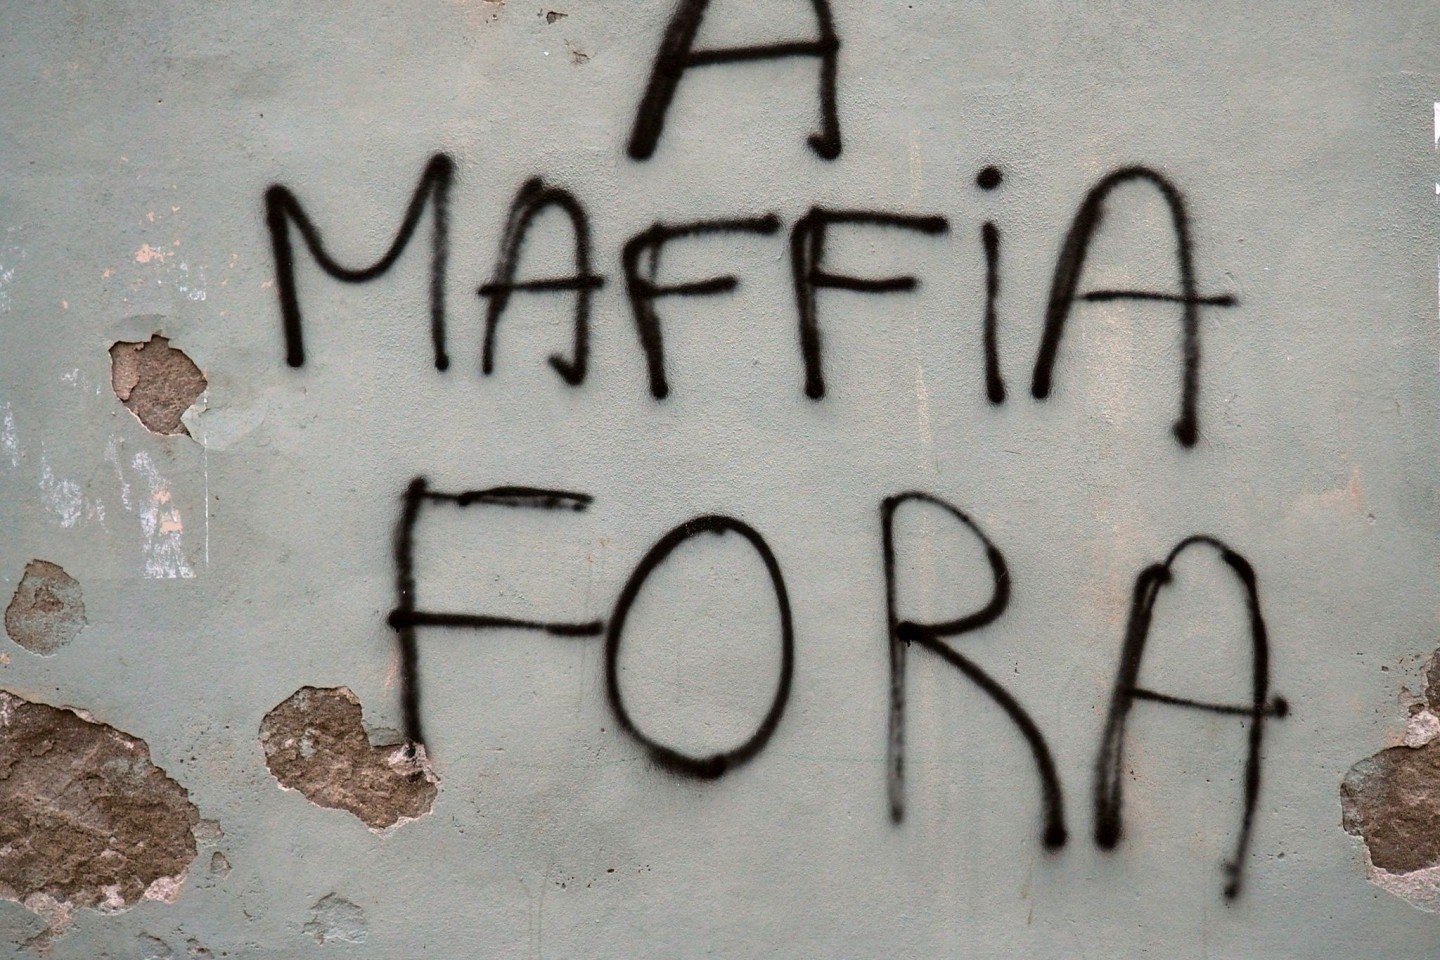 An eine Hausmauer in der korsischen Küstenstadt Bastia steht auf Korsisch geschrieben «Mafia raus».